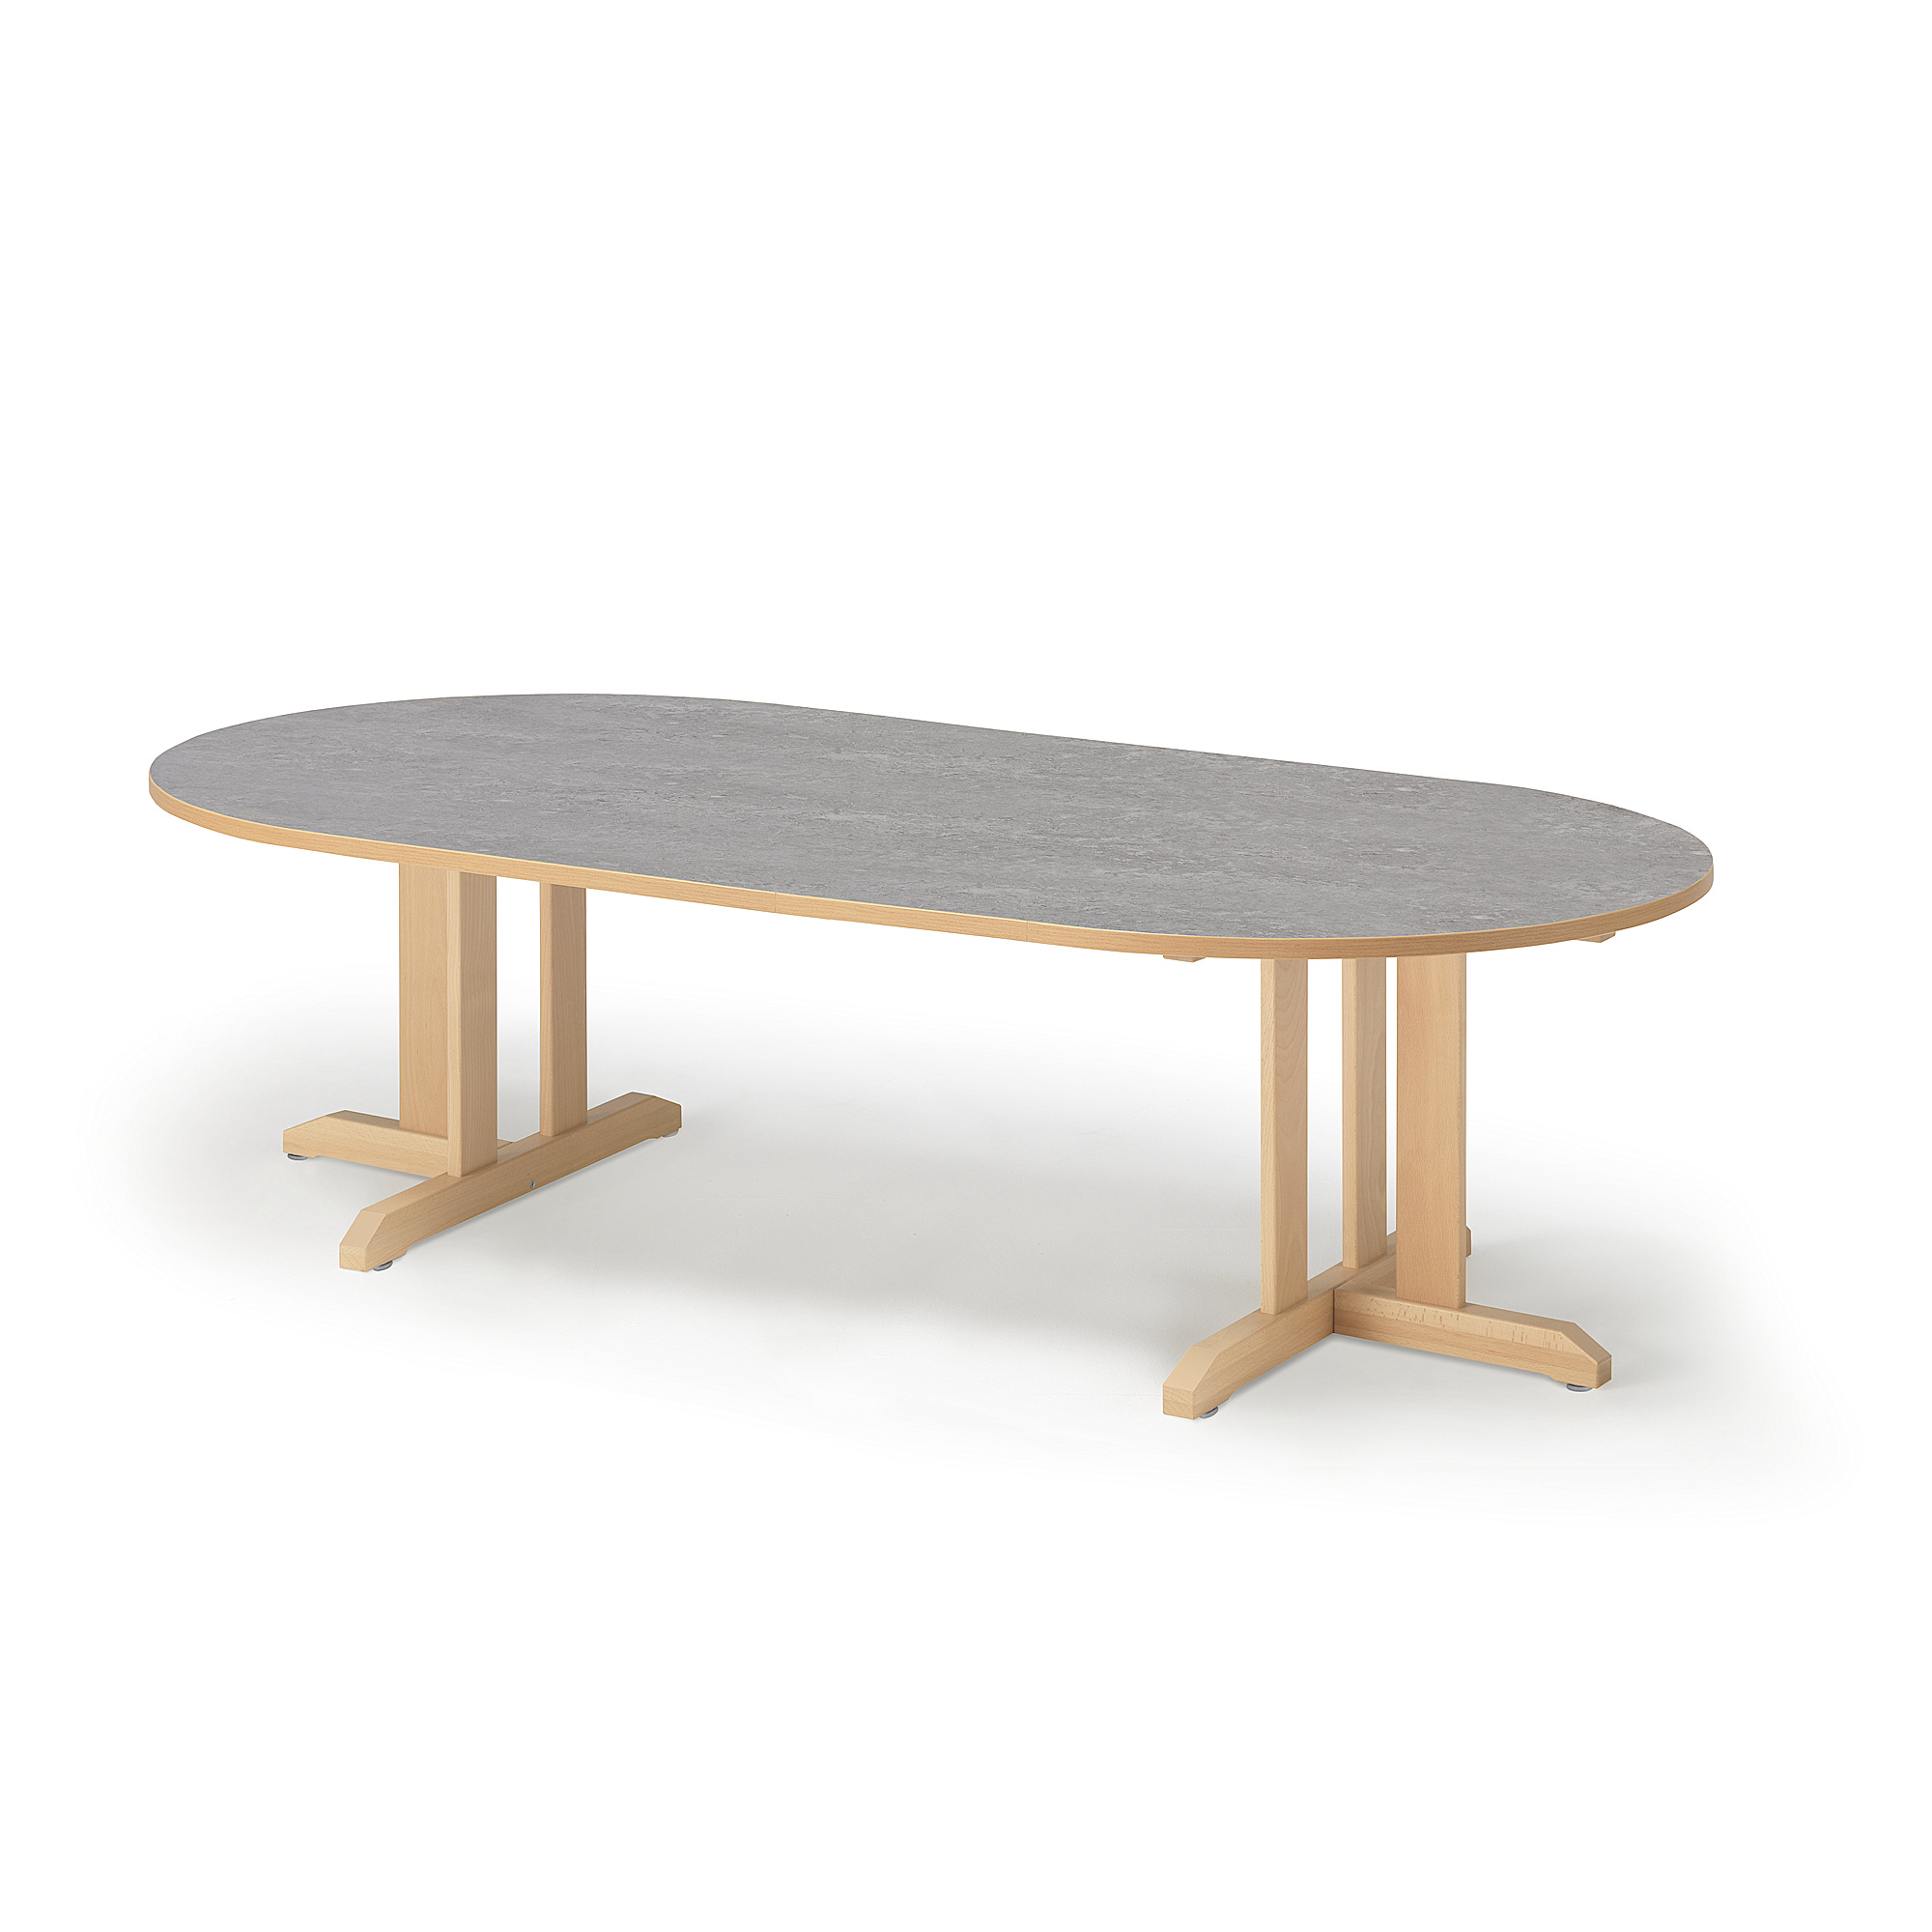 Stůl KUPOL, 2000x1000x500 mm, oválný, akustické linoleum, bříza/šedá